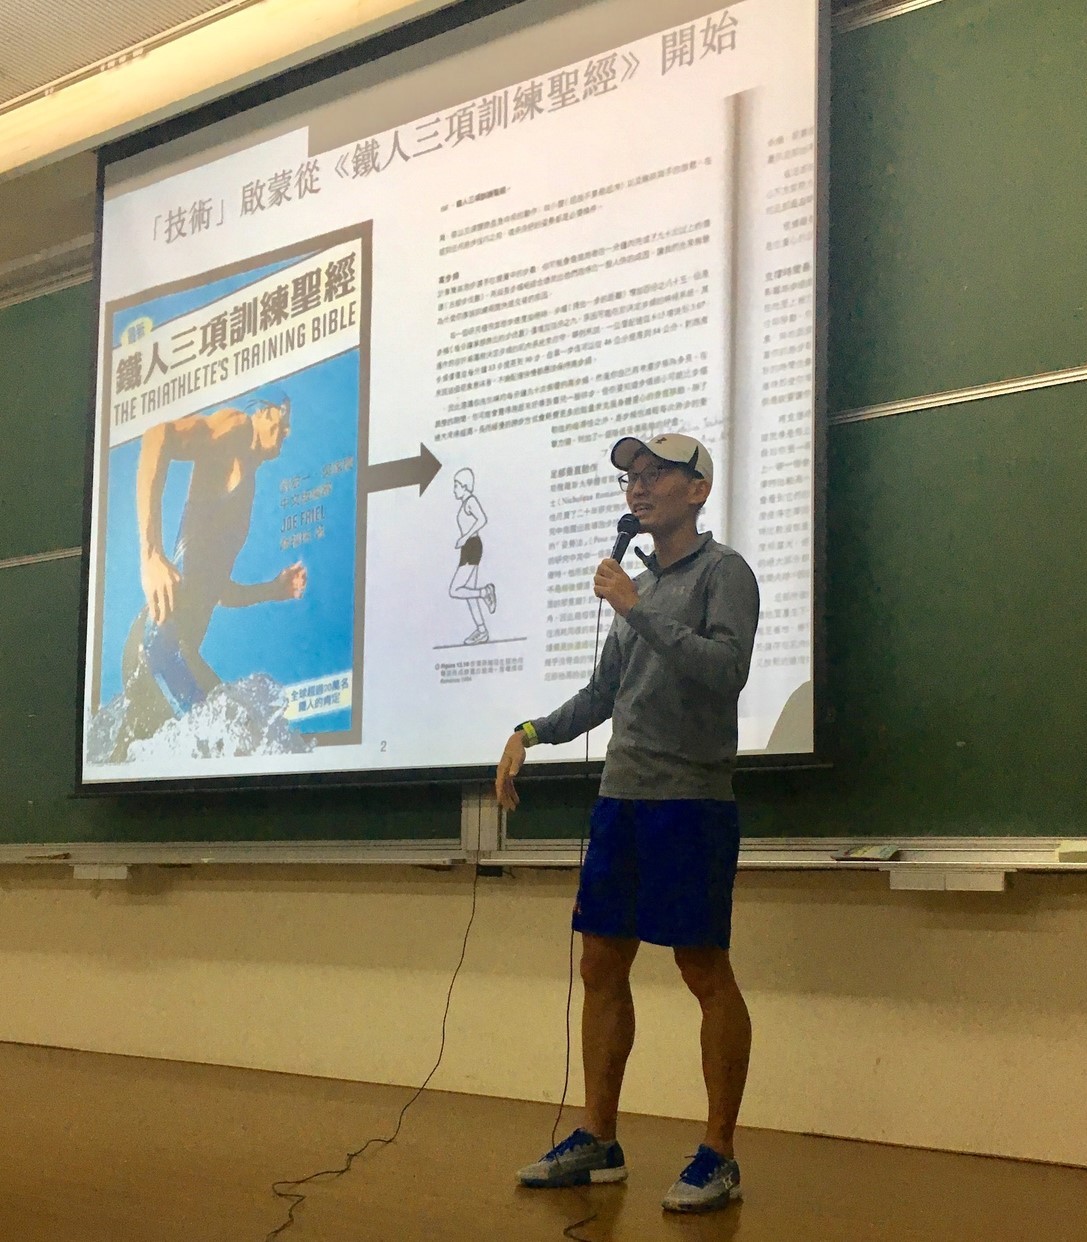 徐國峰老師講授「游、騎、跑三項運動技術中共通的元素」